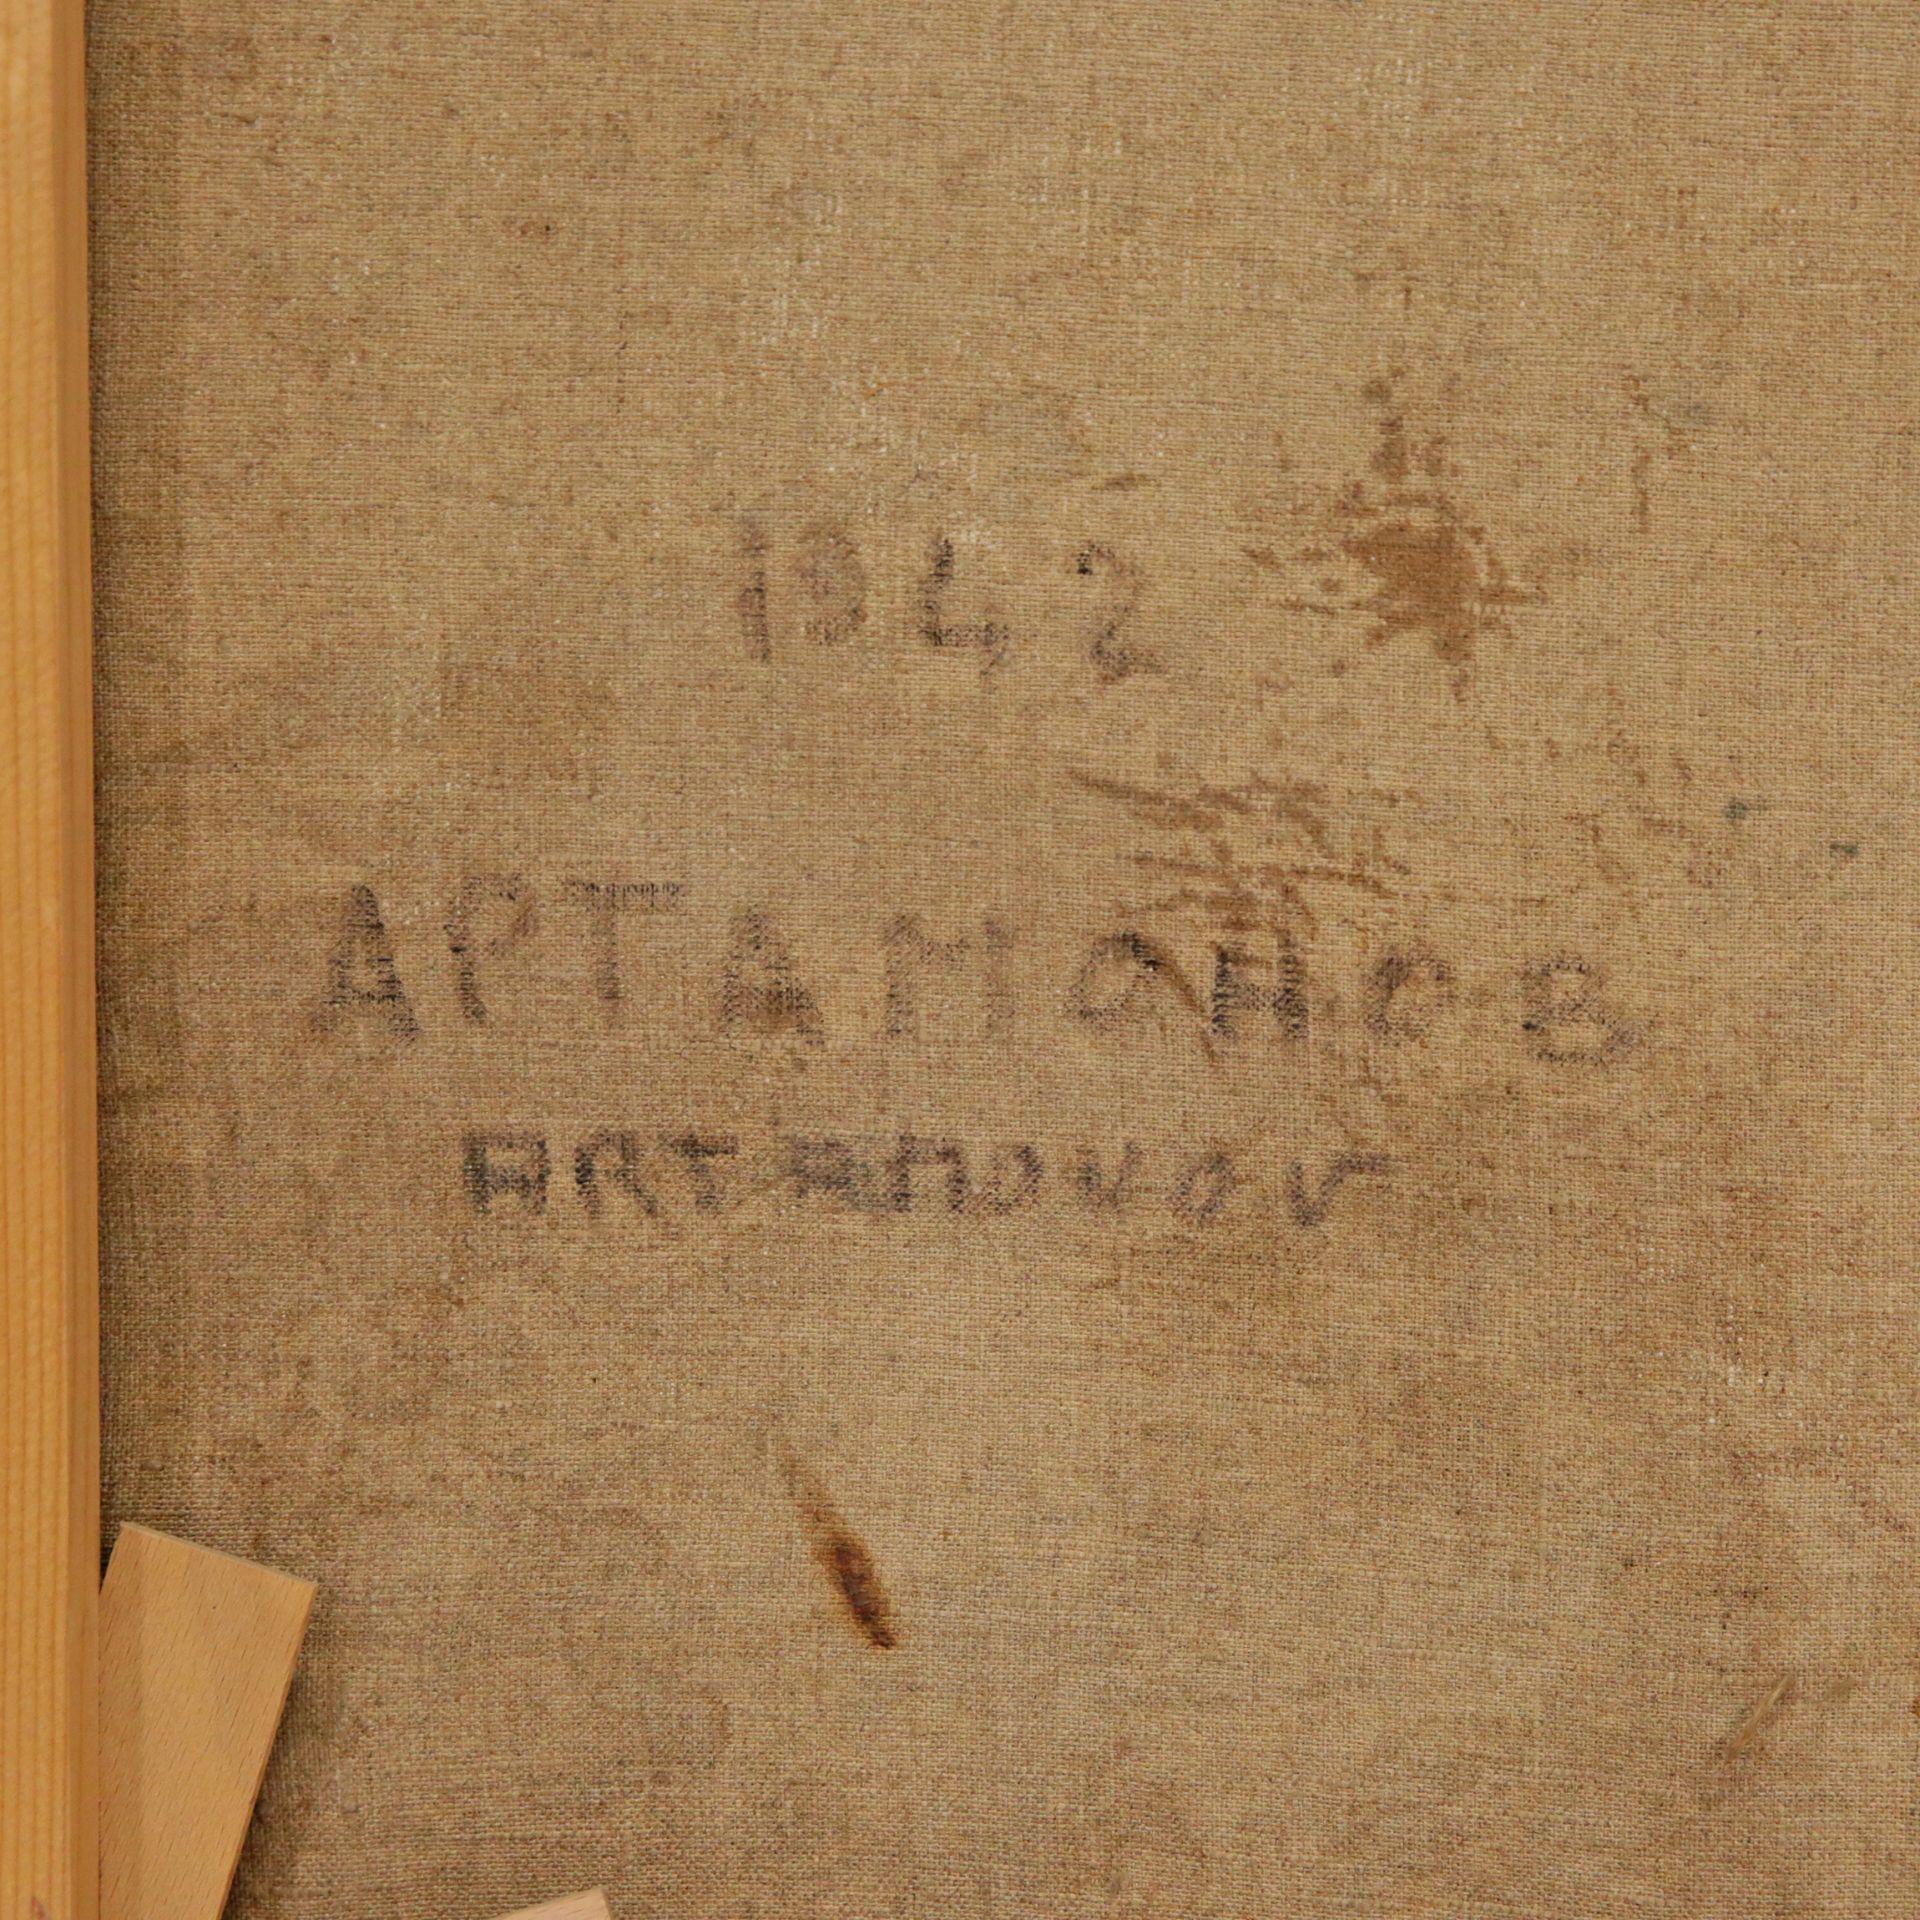 ARTAMONOV "Seated Nude", 1942, oil on canvas, signed on the back in Russian - ARTAMONOV 1942. - Bild 4 aus 6